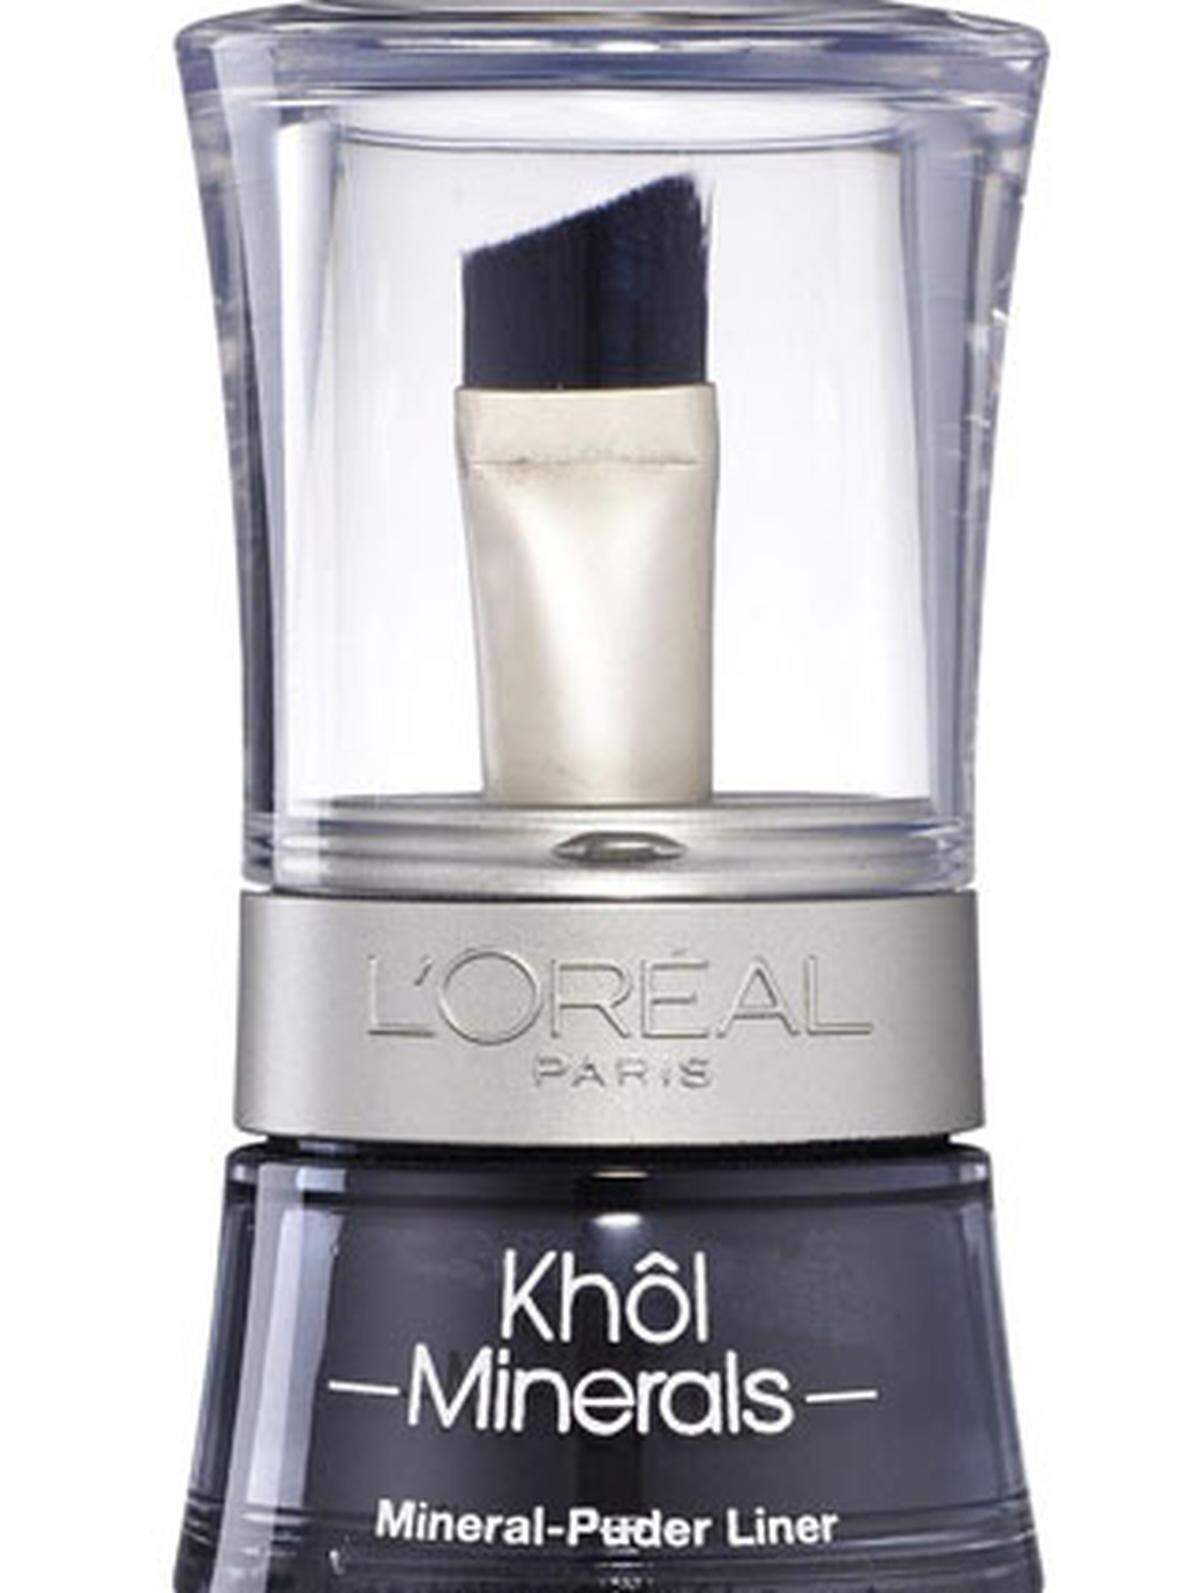 L’Oréal Paris hat eine ganze Make-up-Serie ­herausgebracht. „Khôl Minerals“ etwa verspricht: kein Parfum, keine Konservierungsstoffe, auf Basis natürlicher Mineralien, zirka 13 Euro.